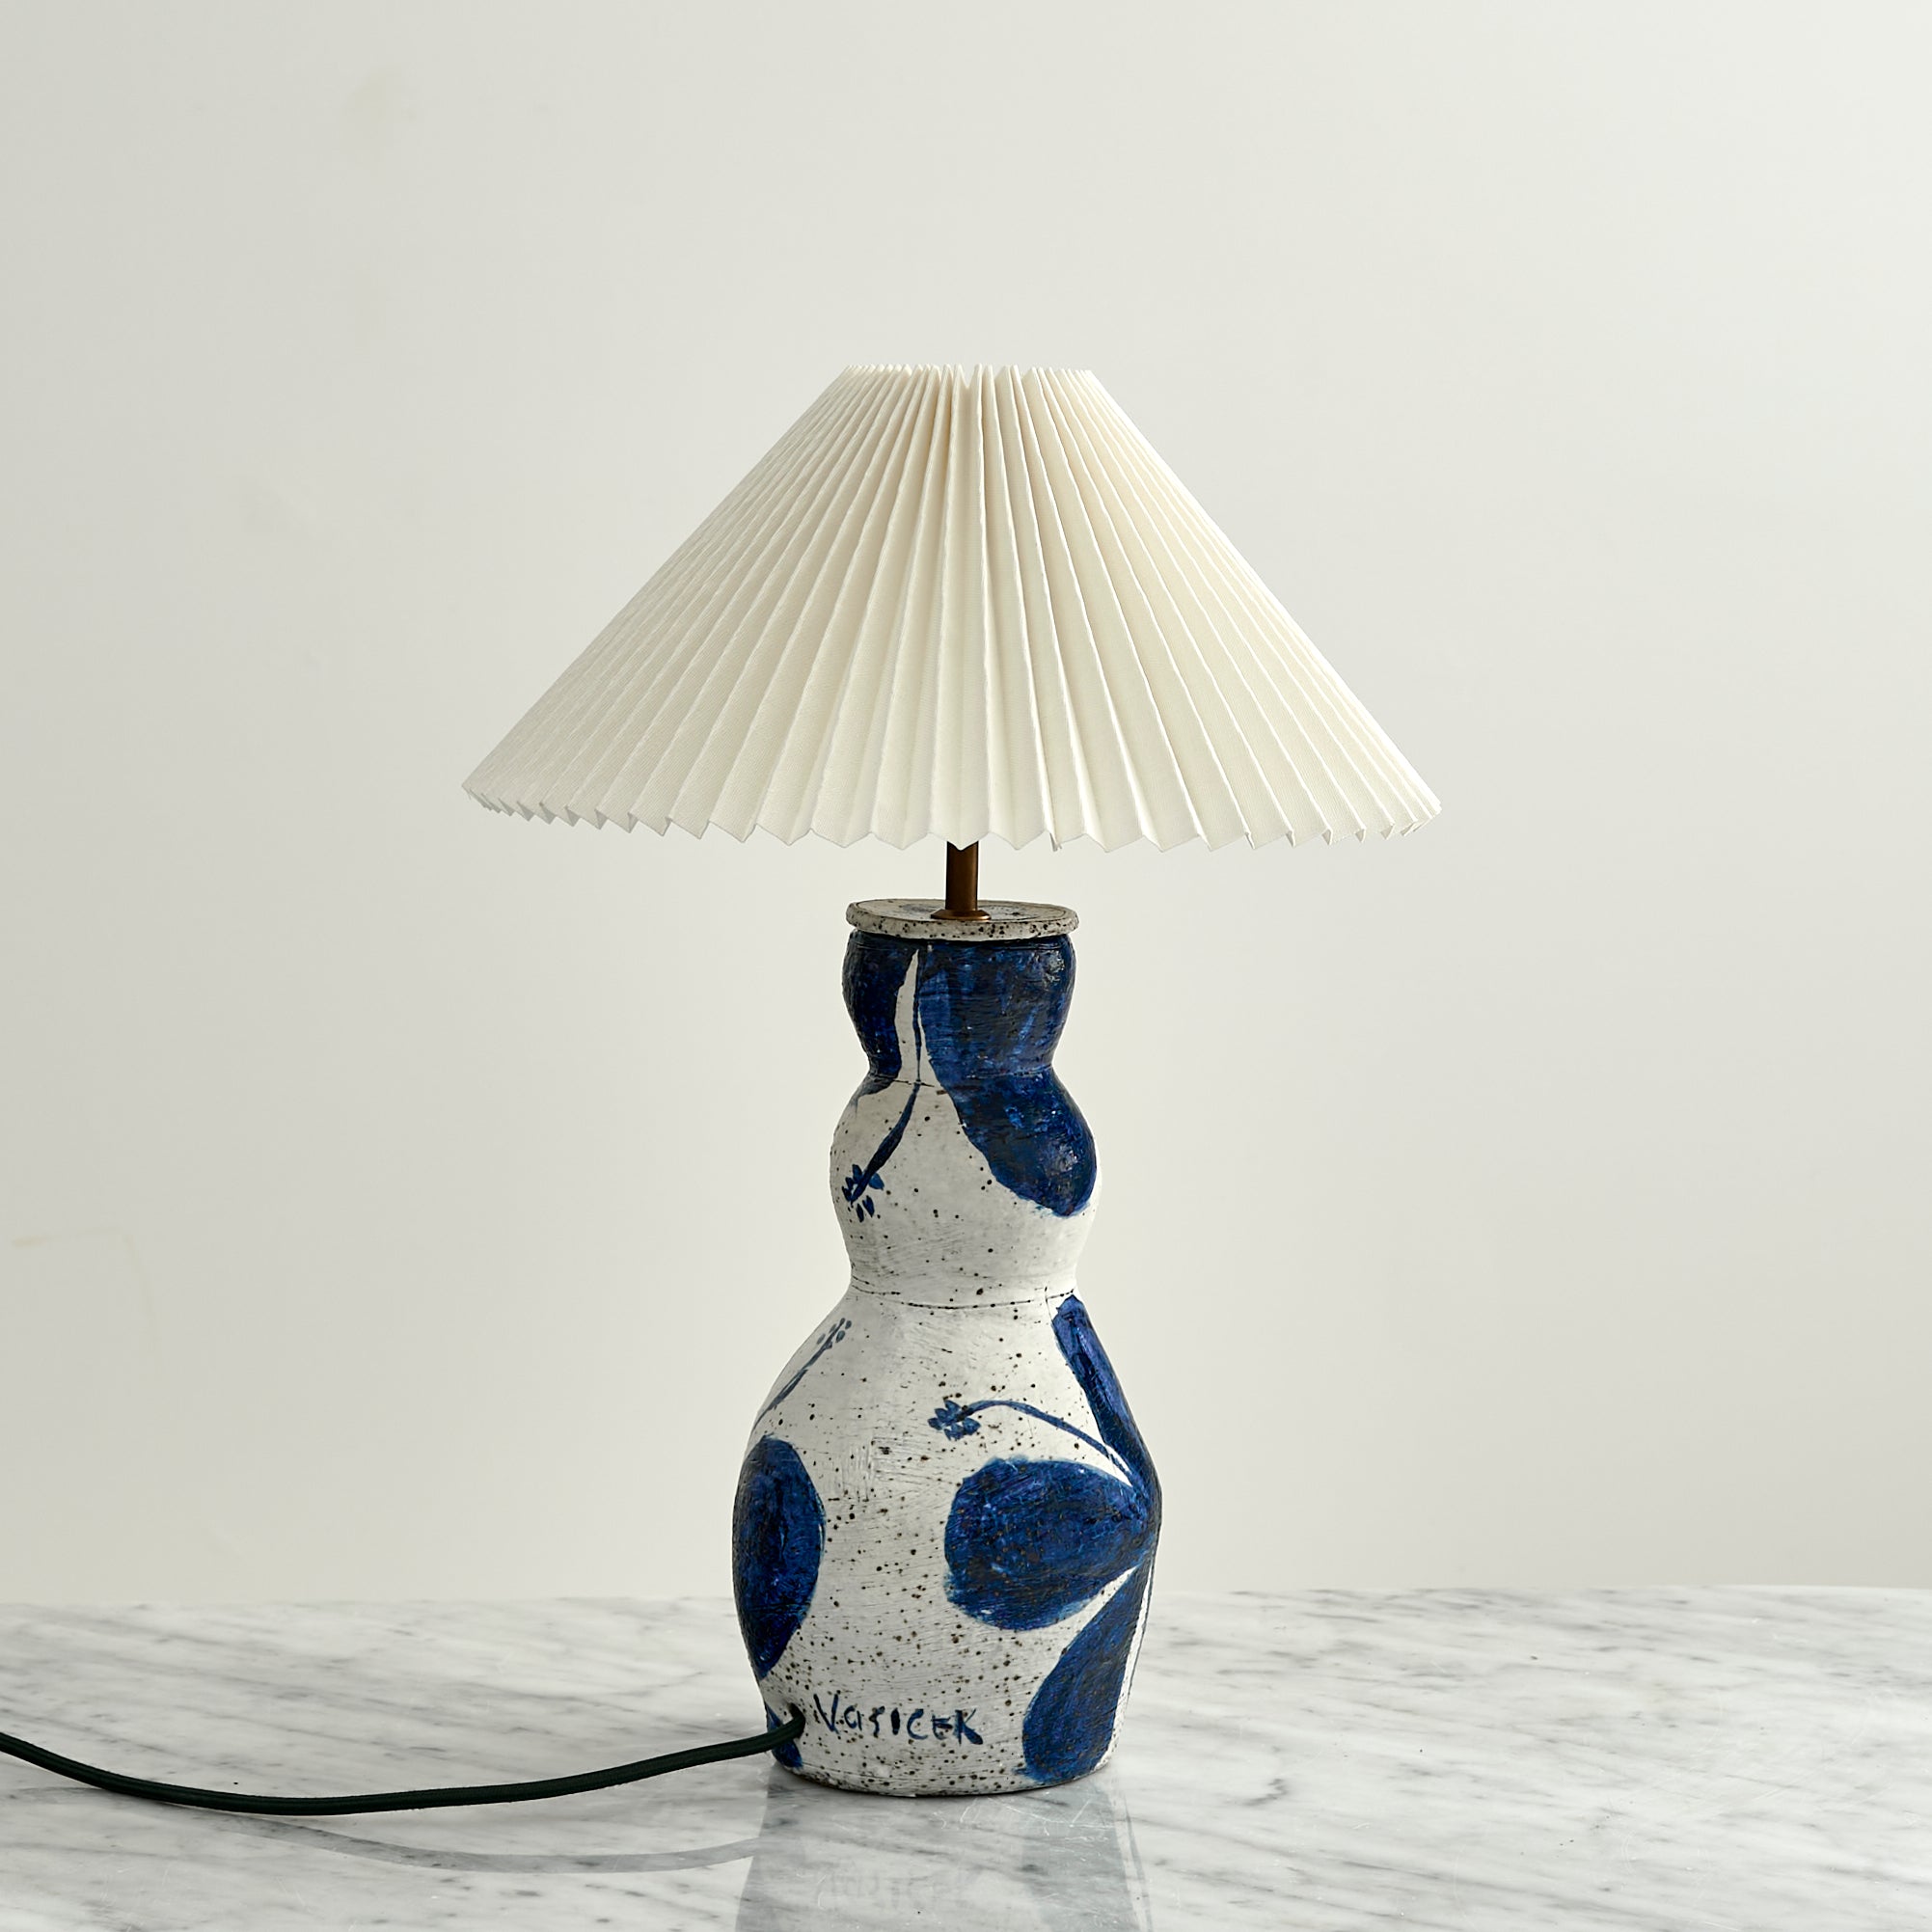 Lamp No. 8